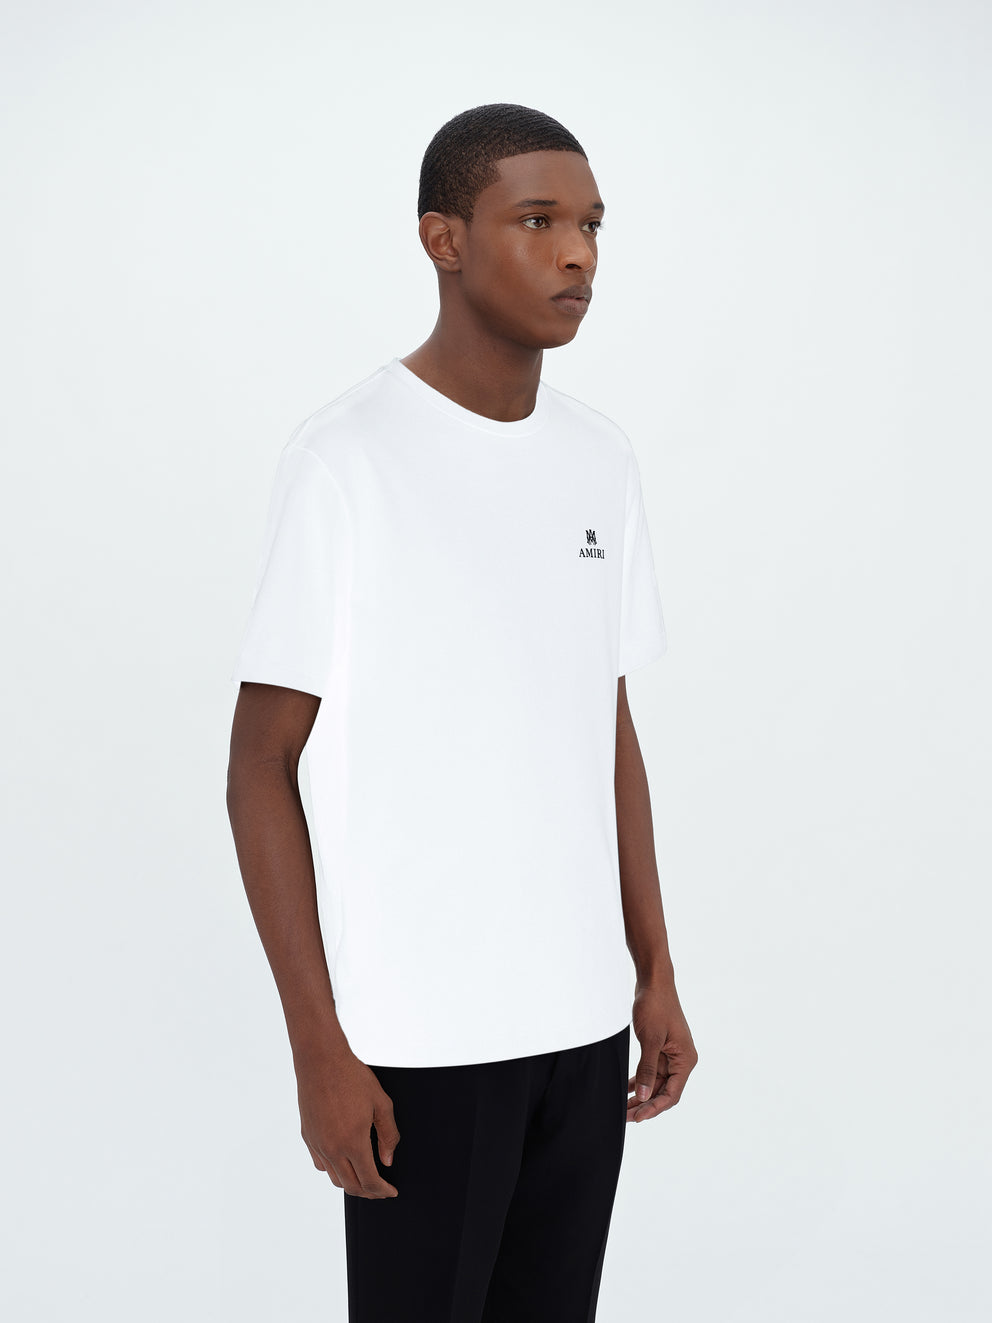 Camisetas Running Amiri Micro M.A. Bar Hombre Blancas | 5476-RNXZT